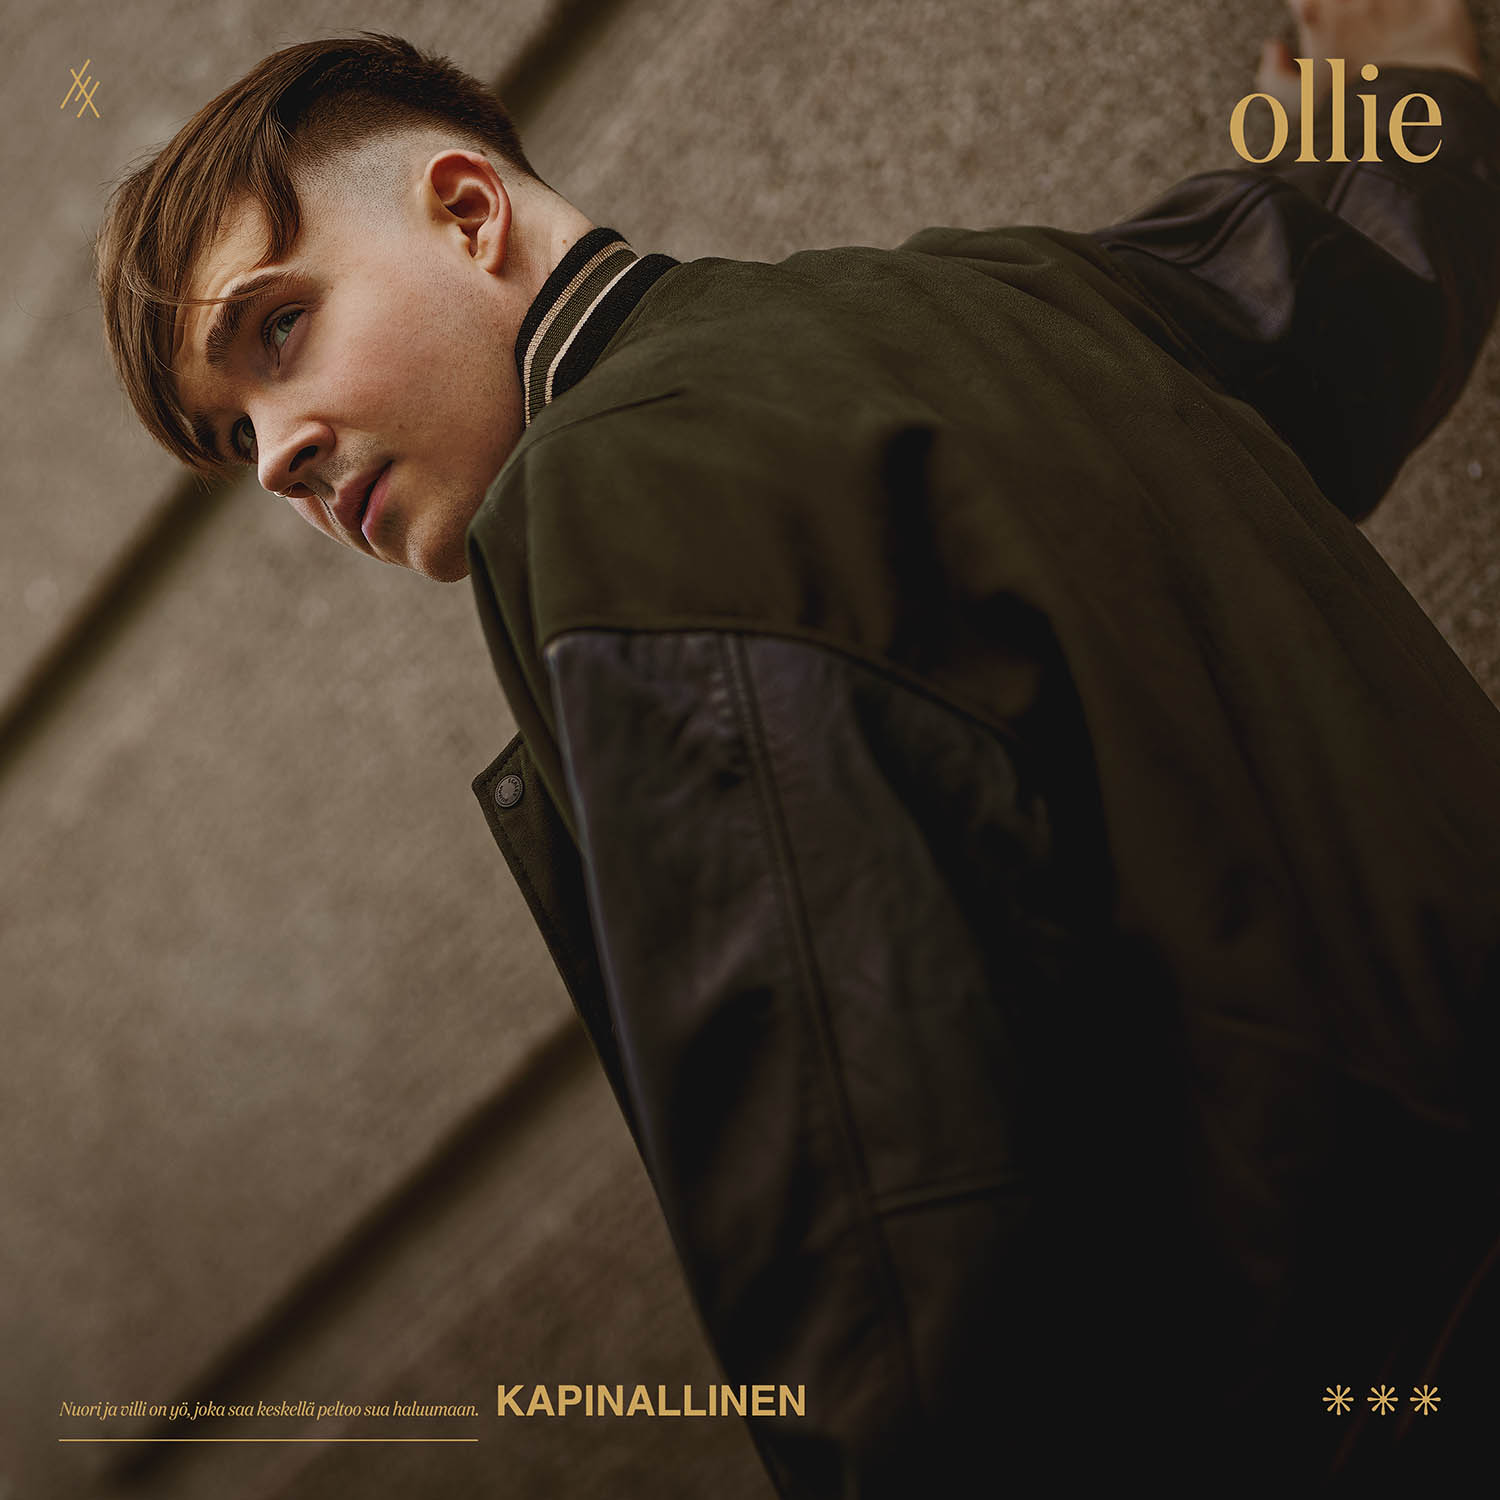 Ollie Kapinallinen singlen kannen suunnittelu, Therwiz Design